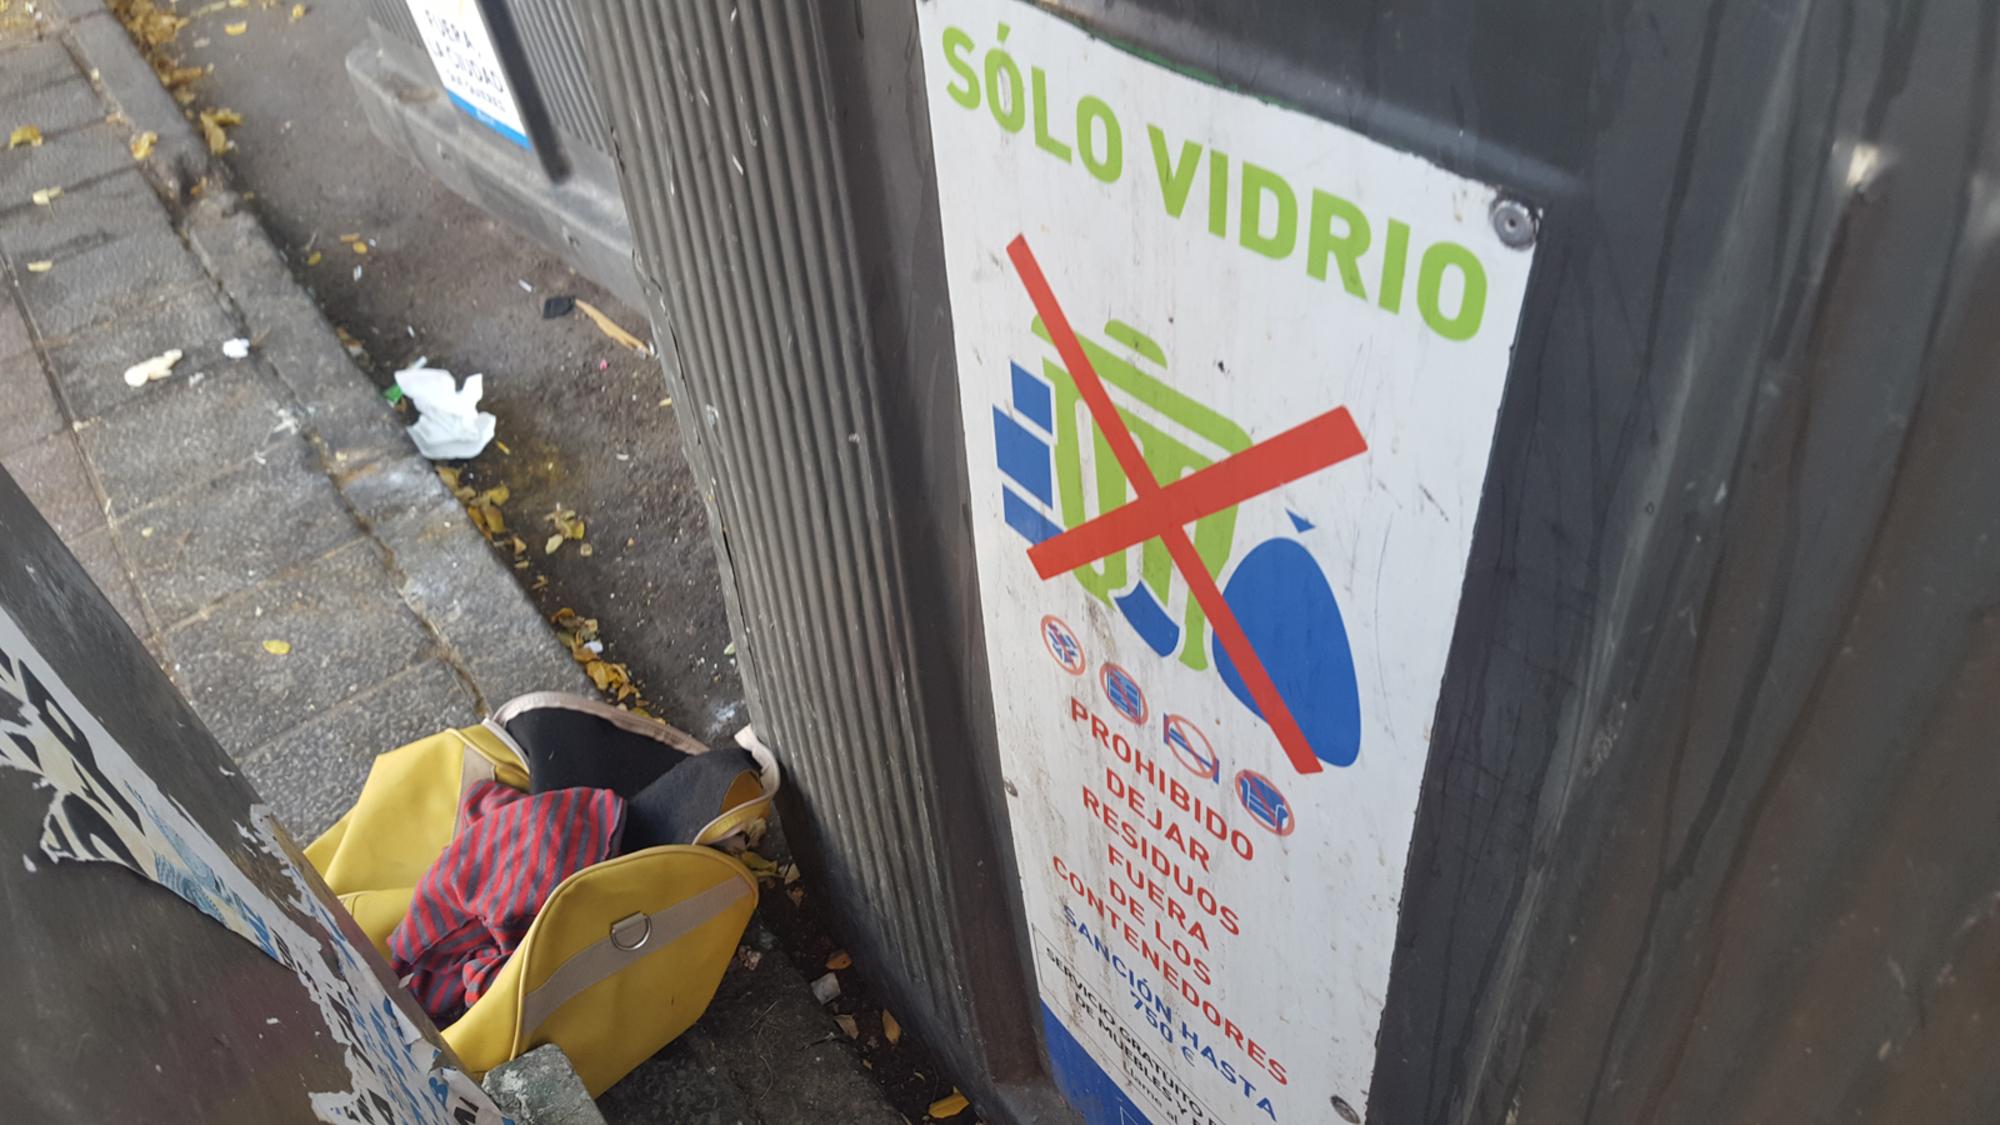 Contenedor Vidrio Reciclaje Madrid